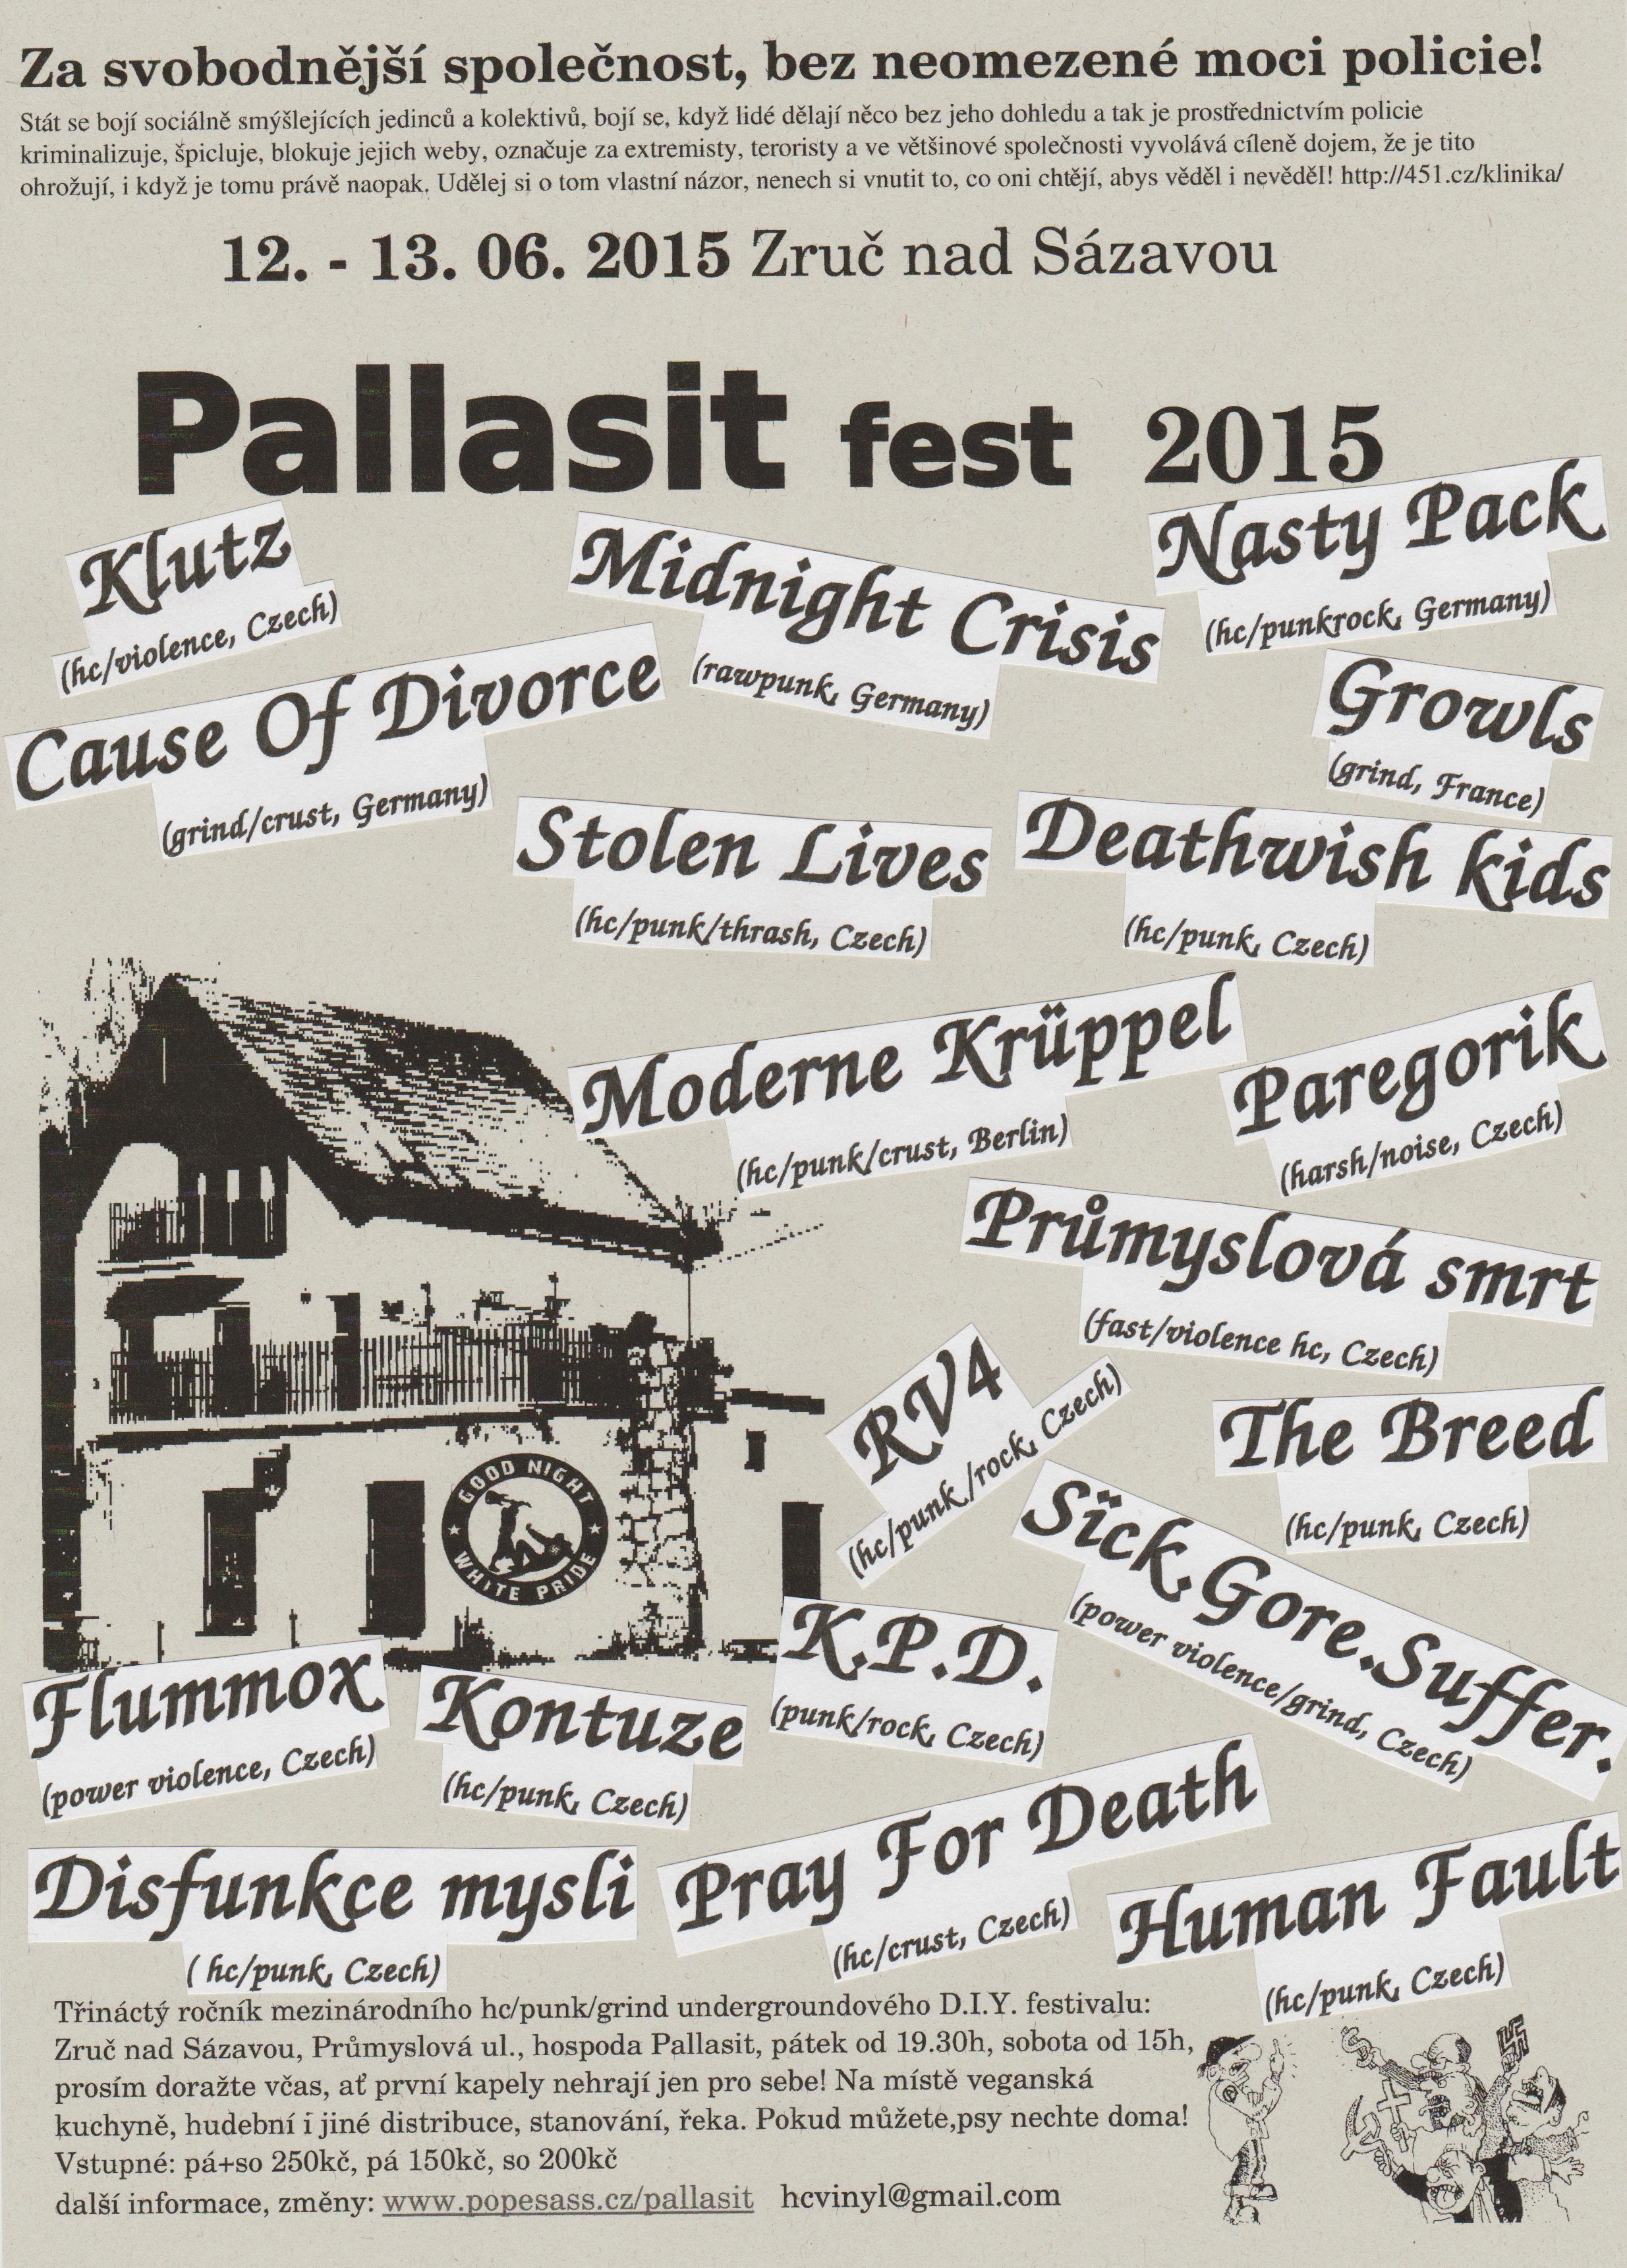 Plakát Pallasit fest 2015